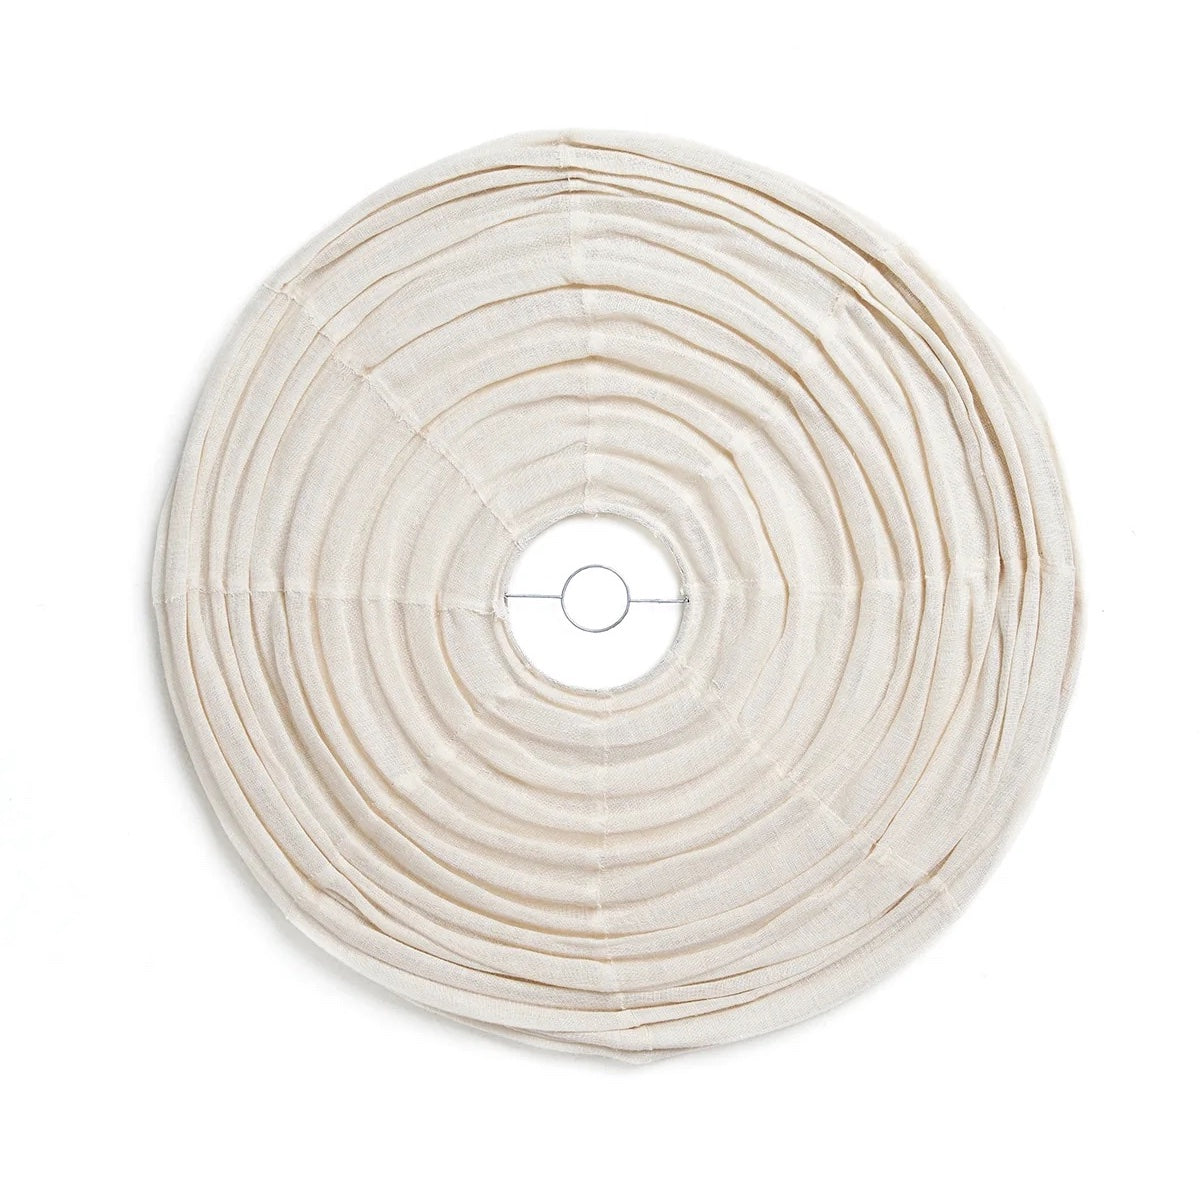 Linen Capsule Pendant Light | Ivory